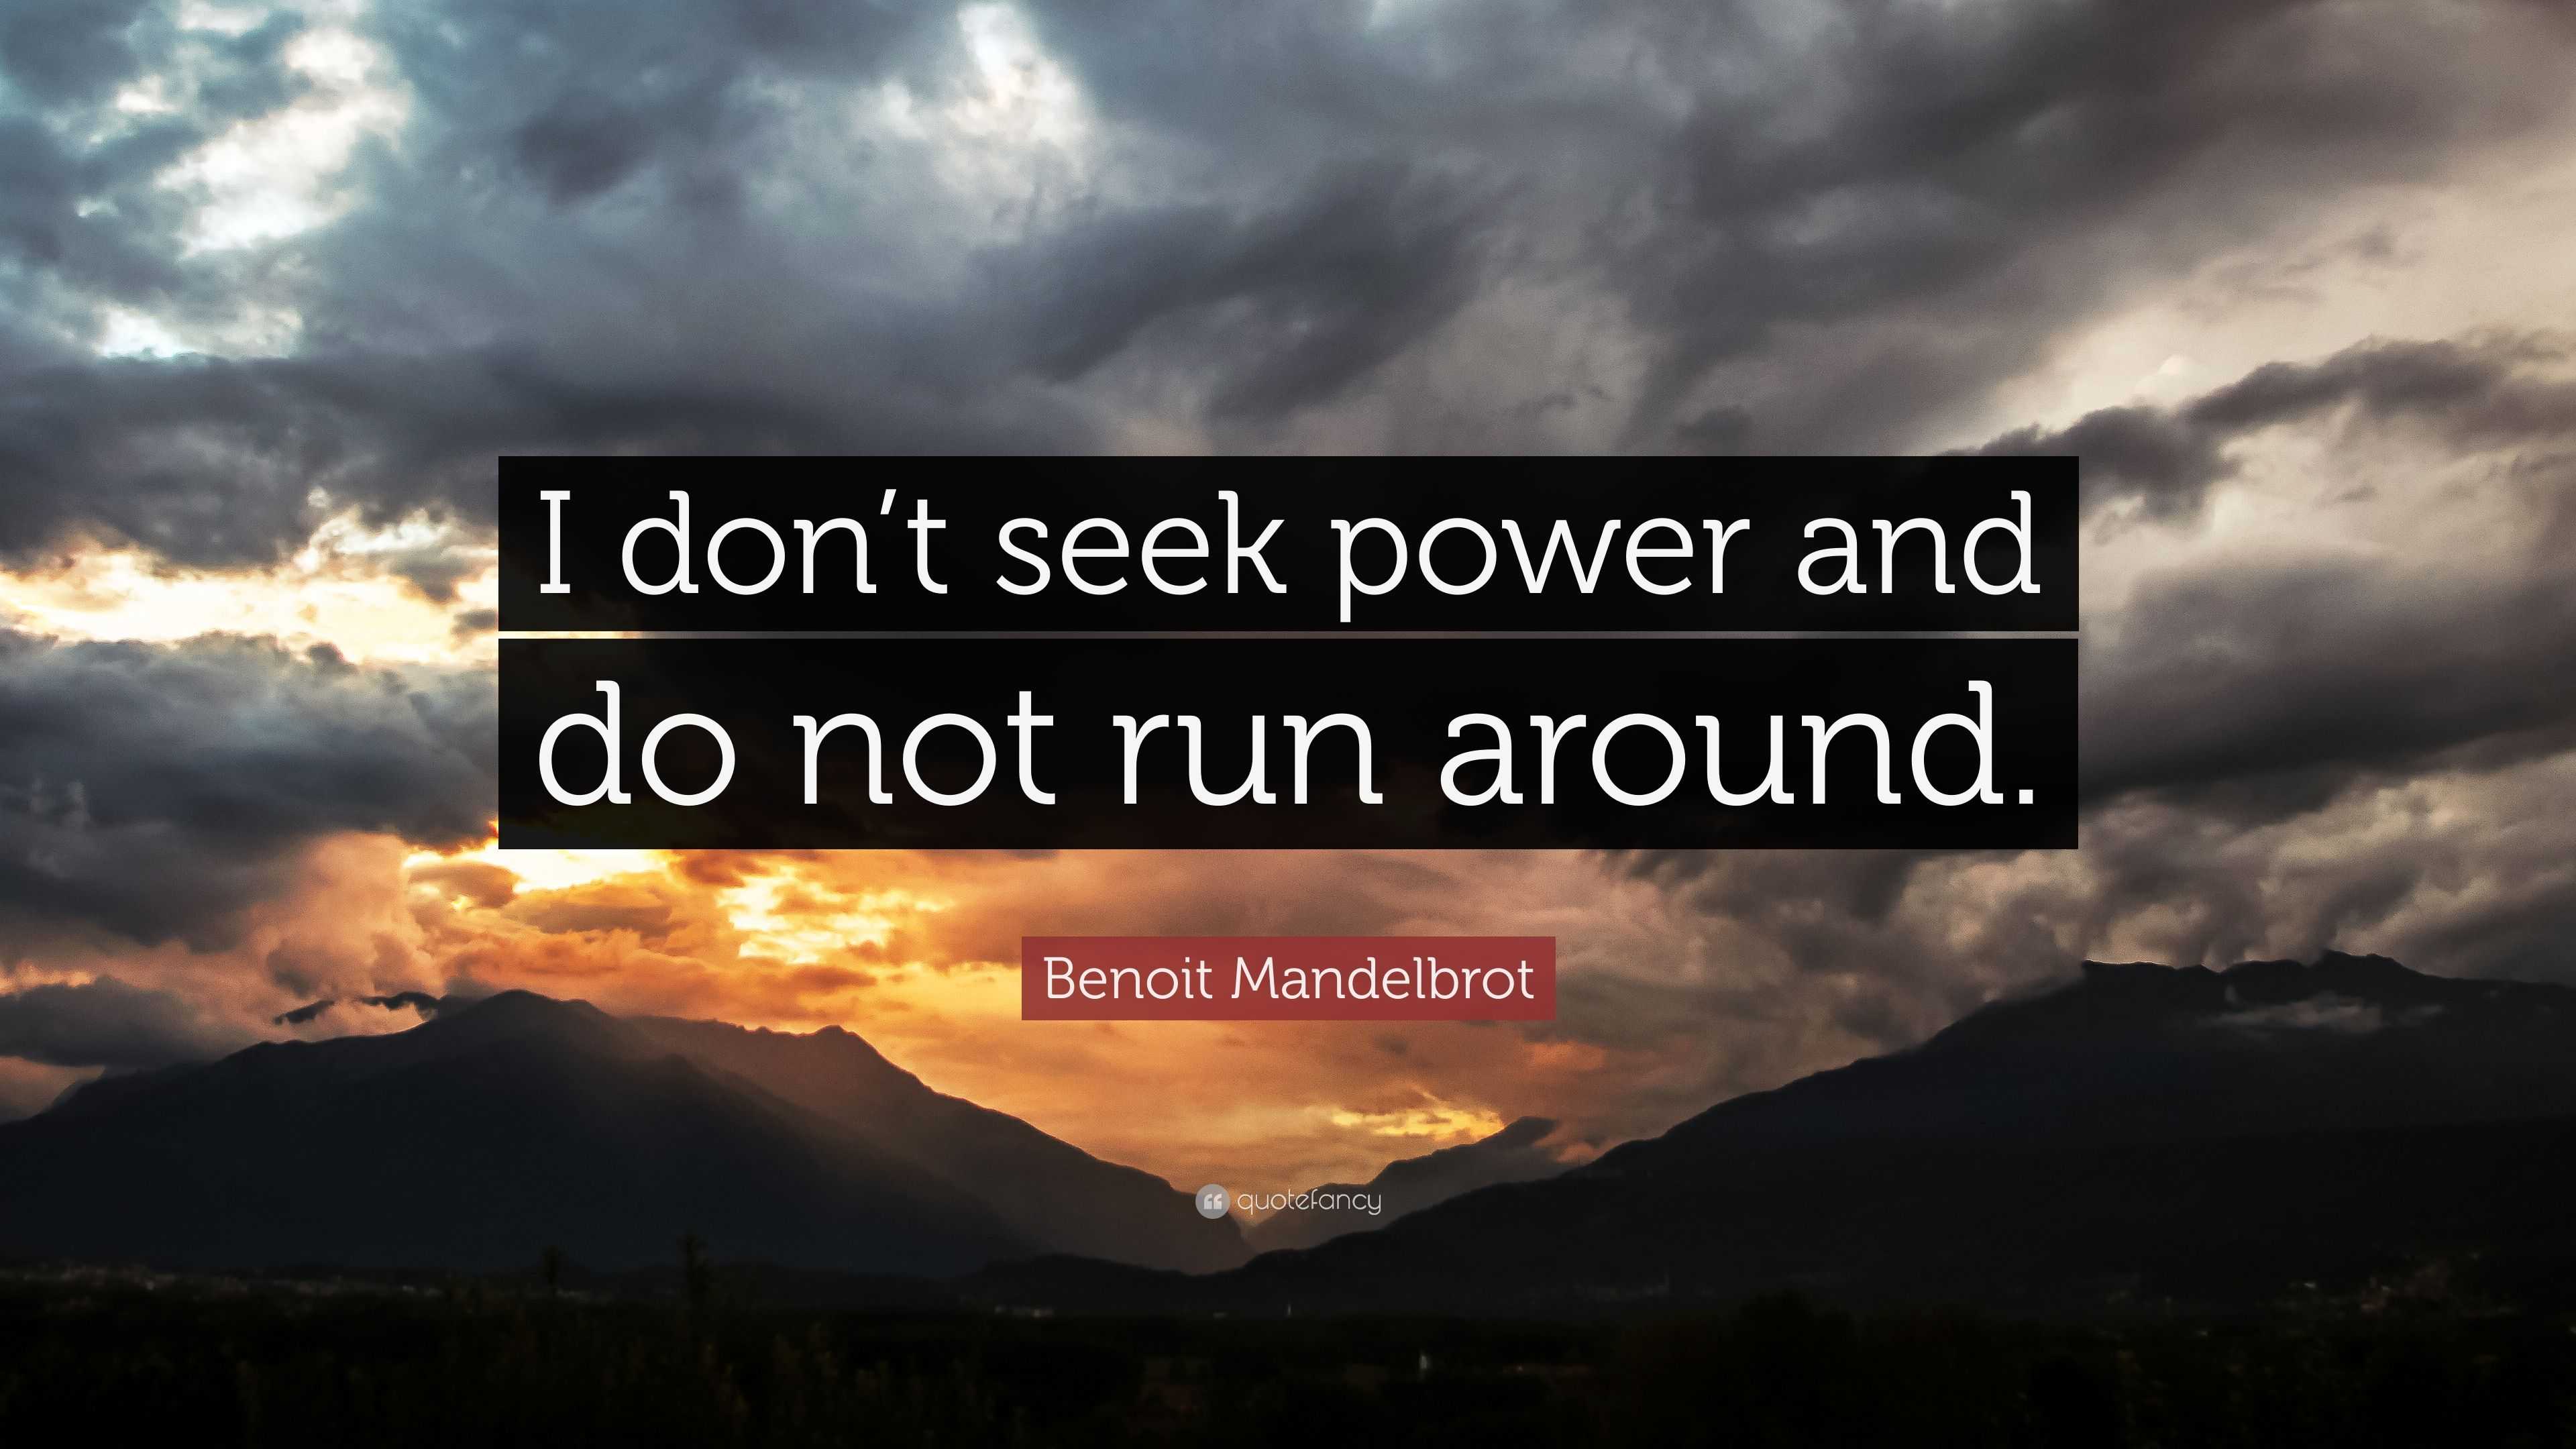 Benoit Mandelbrot Quote “I don t seek power and do not run around